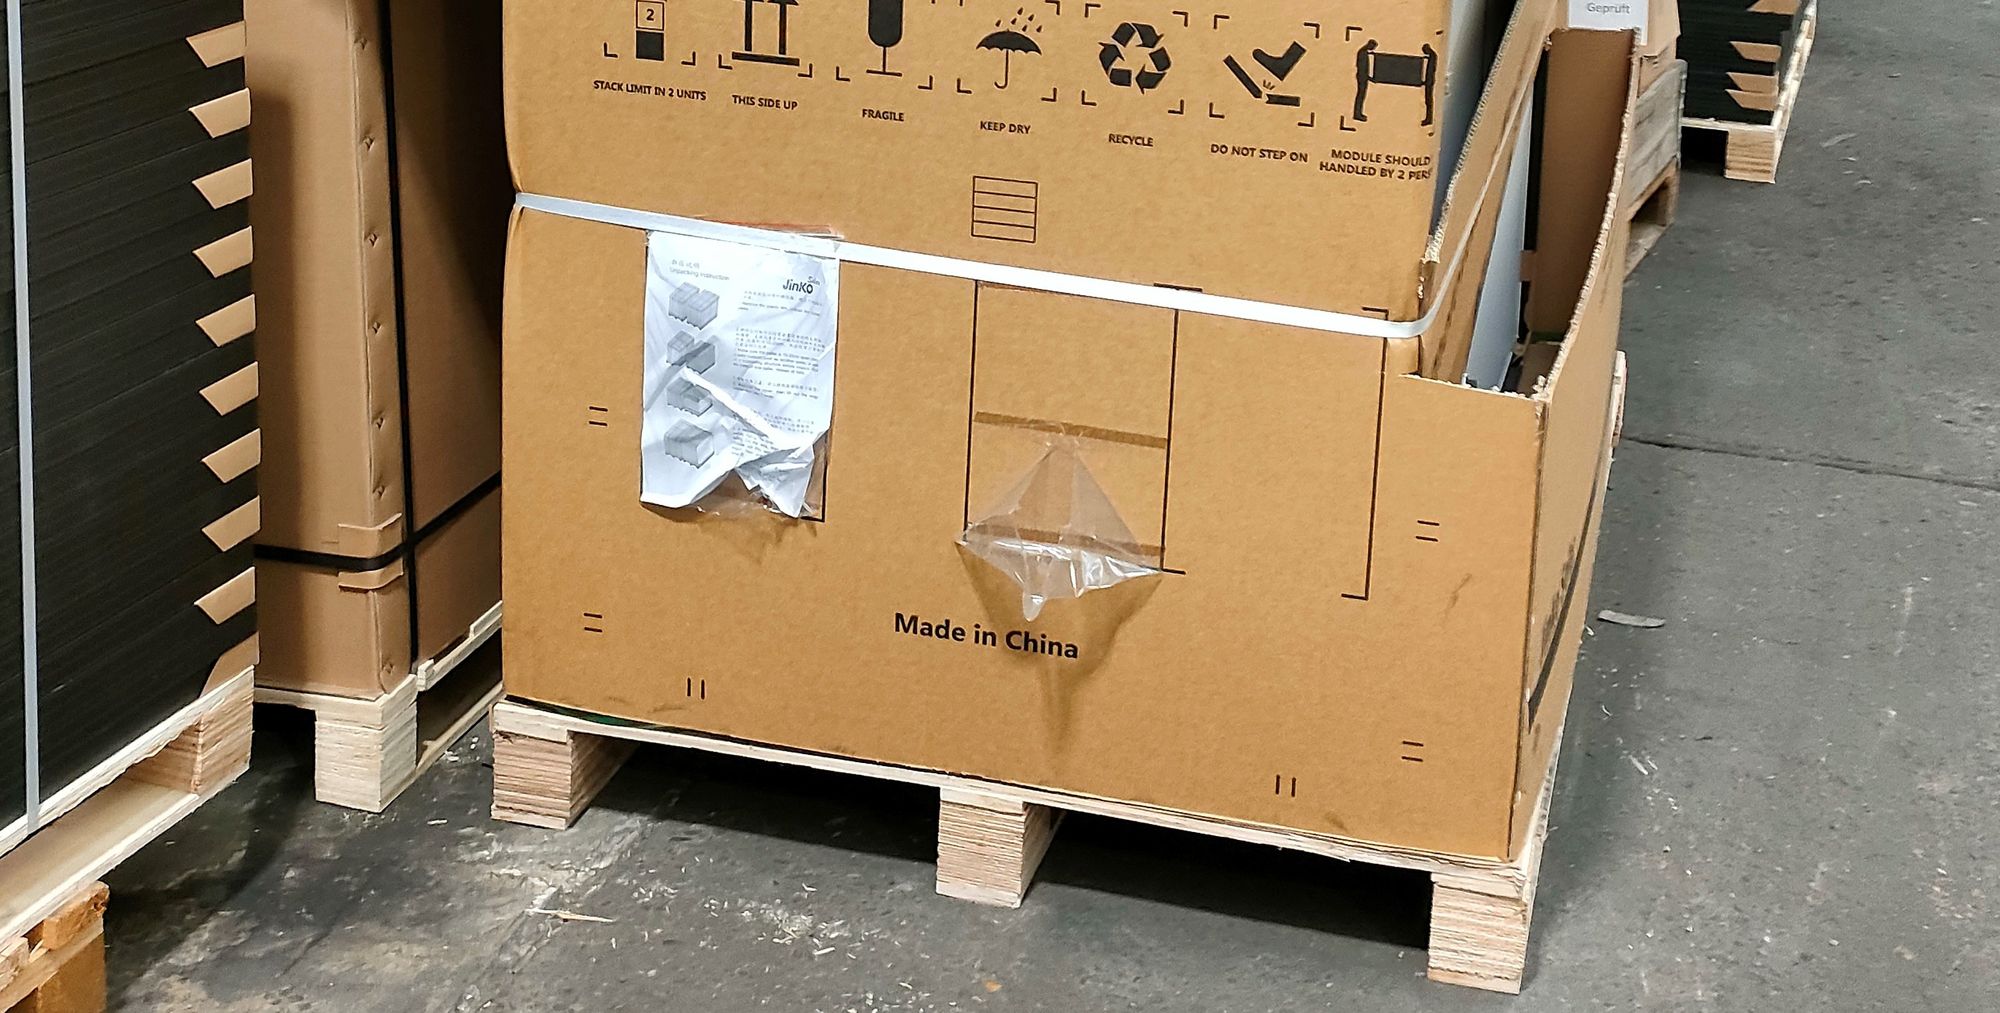 Verpackung einer Photovoltaik-Anlage, auf der "Made in China" steht